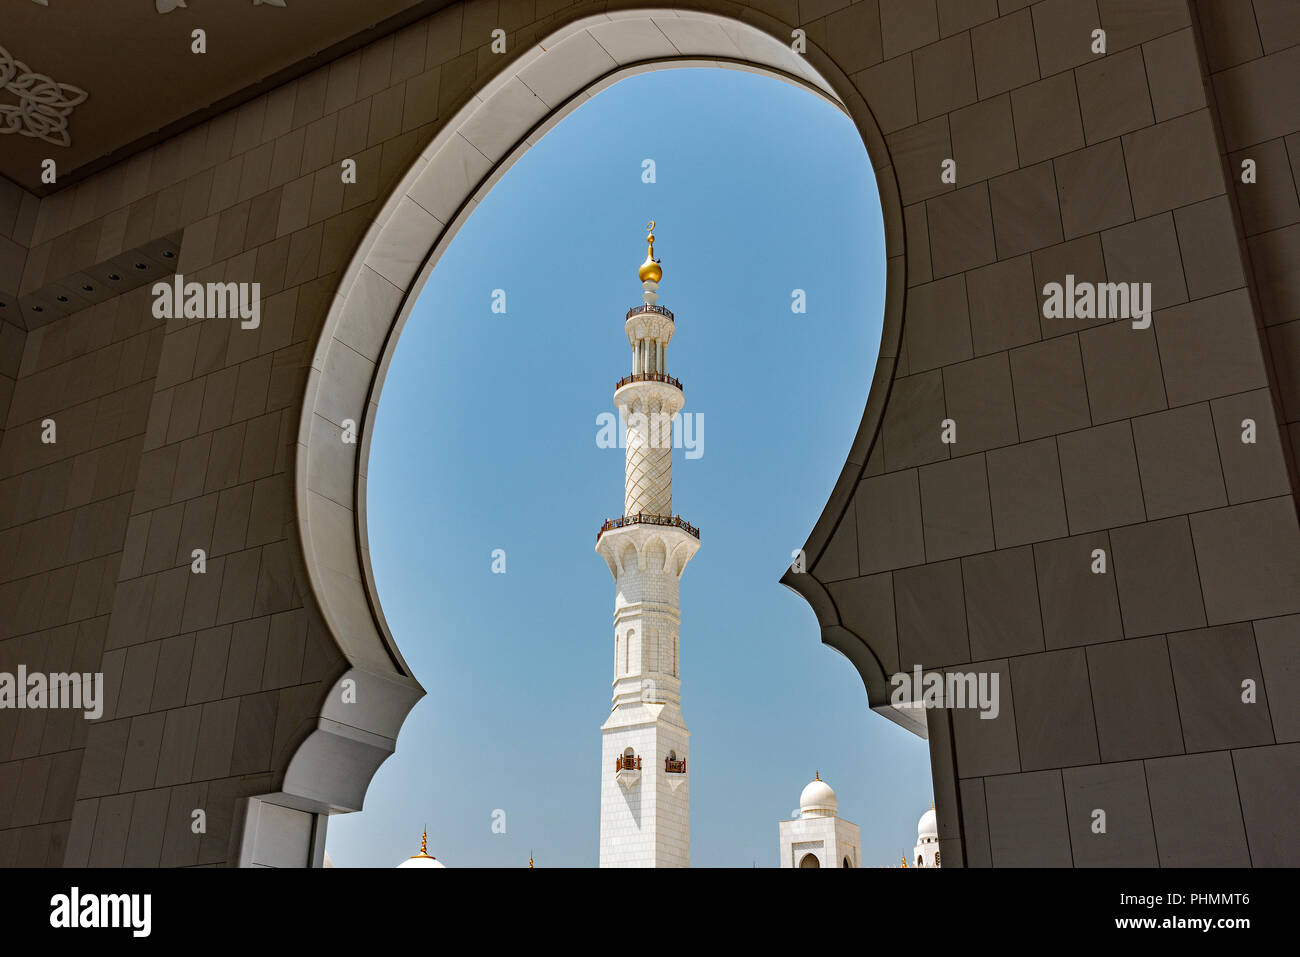 Bilder von der Sheikh Zayed Grand Moschee, Abu Dhabi, V.A.E. Stockfoto